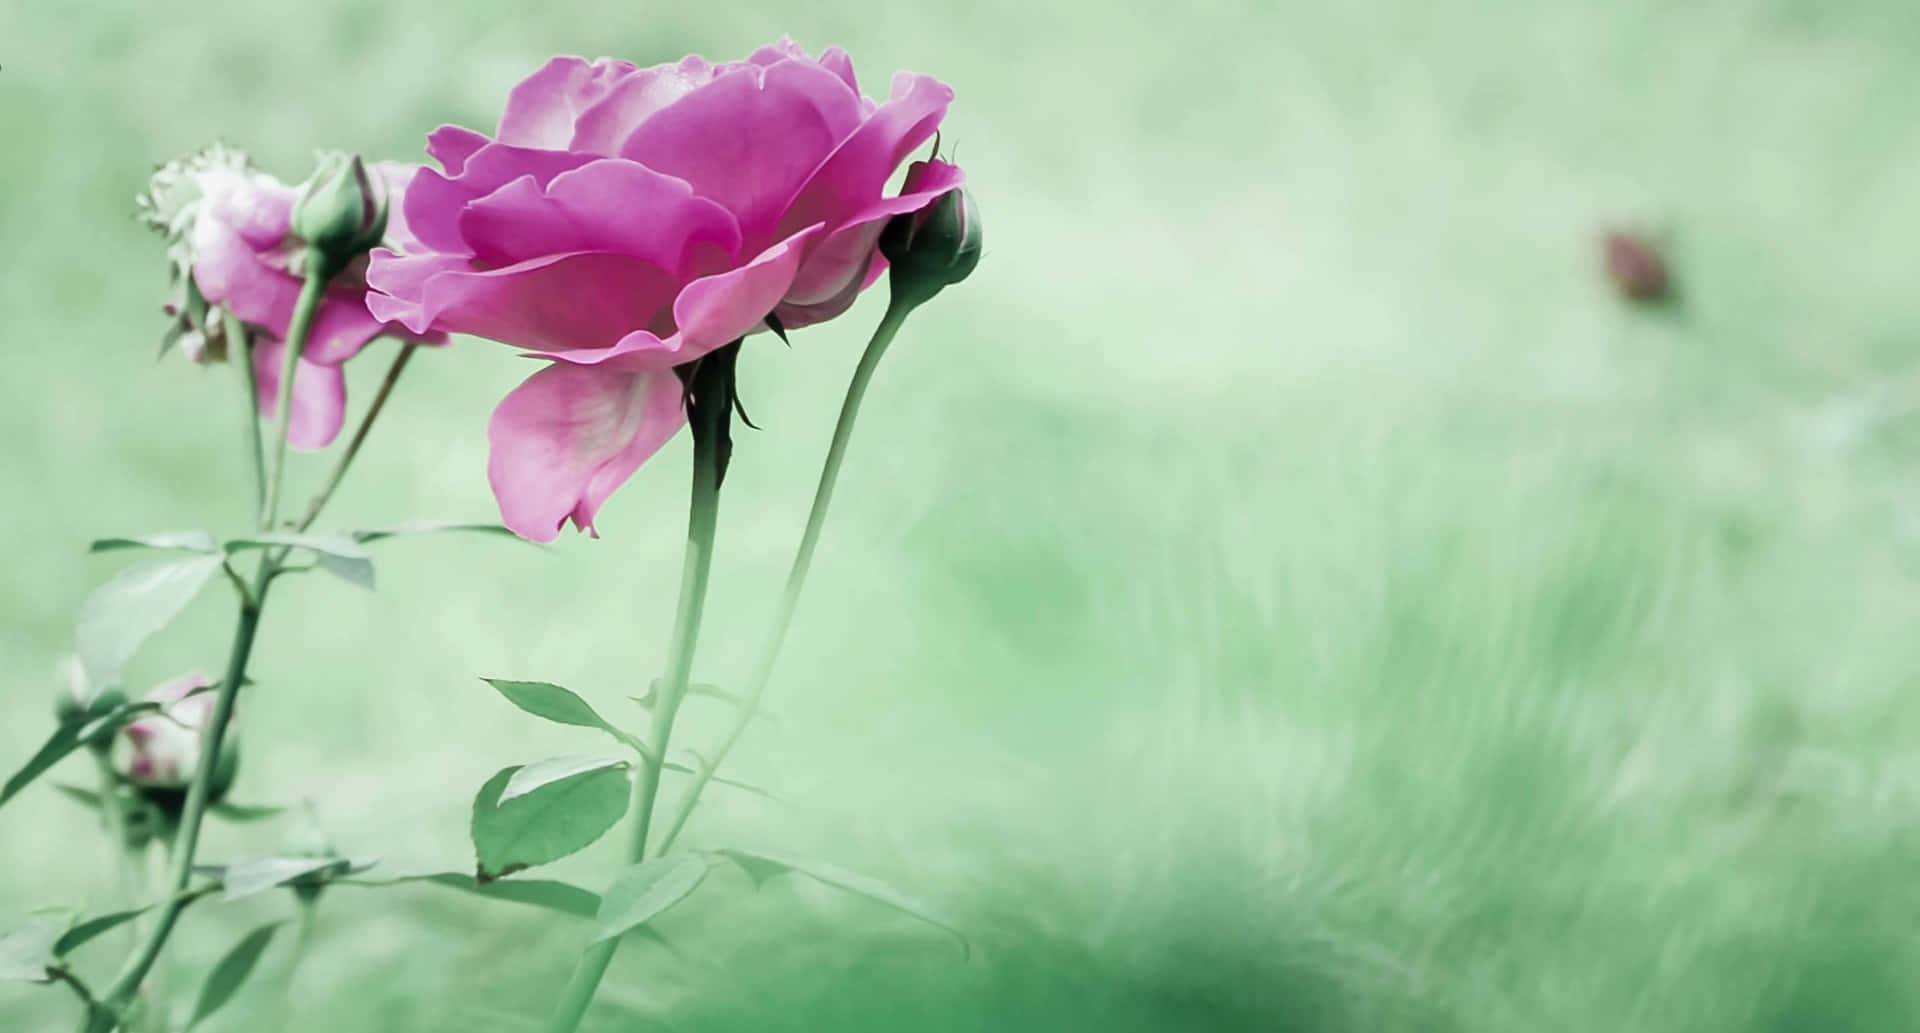 1440phintergrund Mit Pinken Gartenrosen